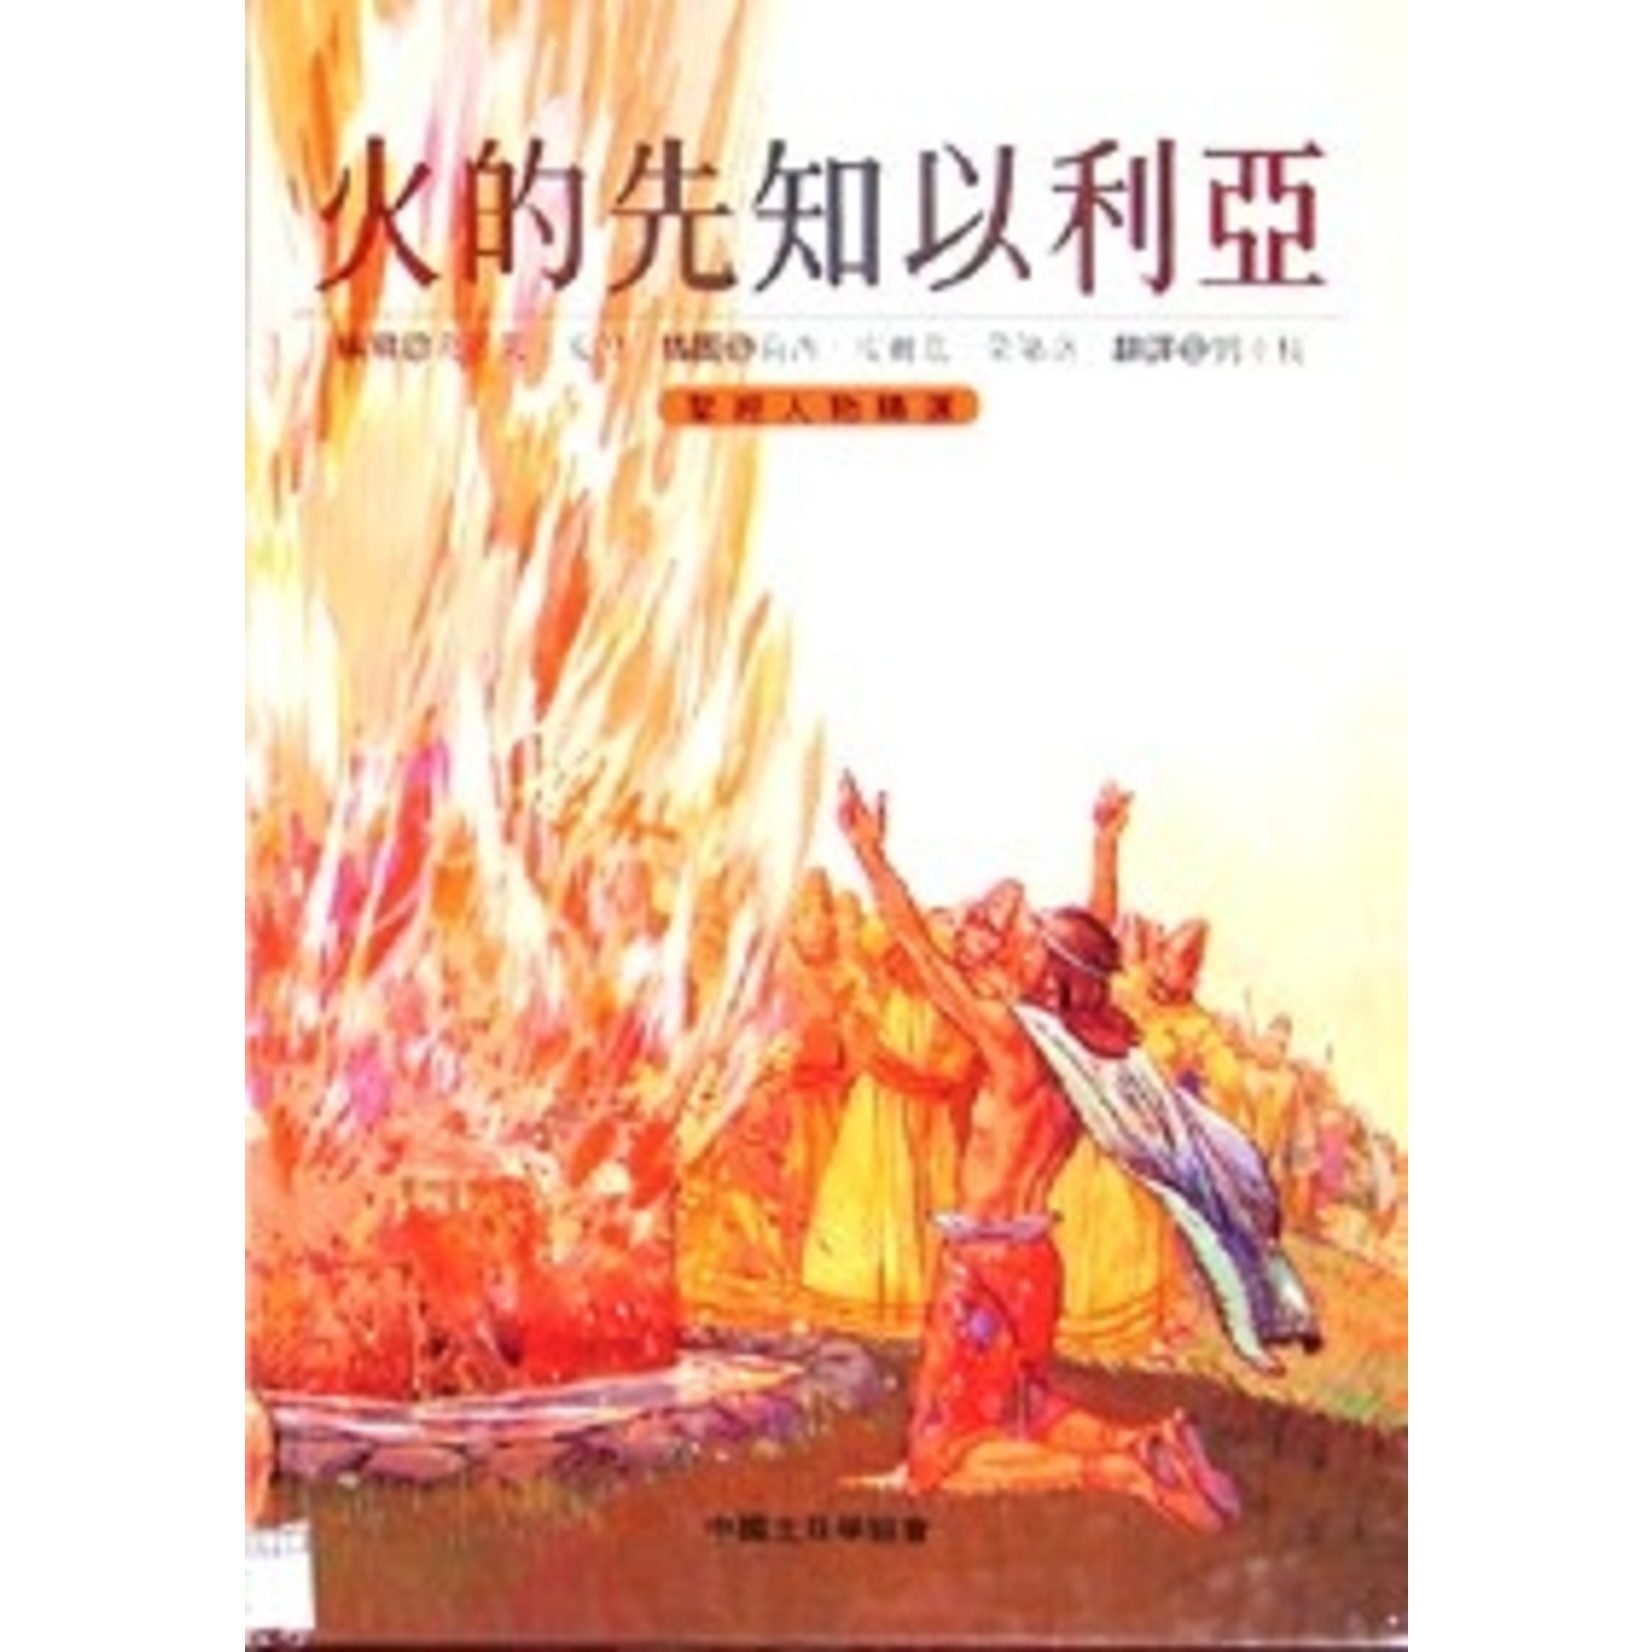 中國主日學協會 China Sunday School Association 火的先知以利亞（聖經人物精選） | Elijah: Prophet of Fire